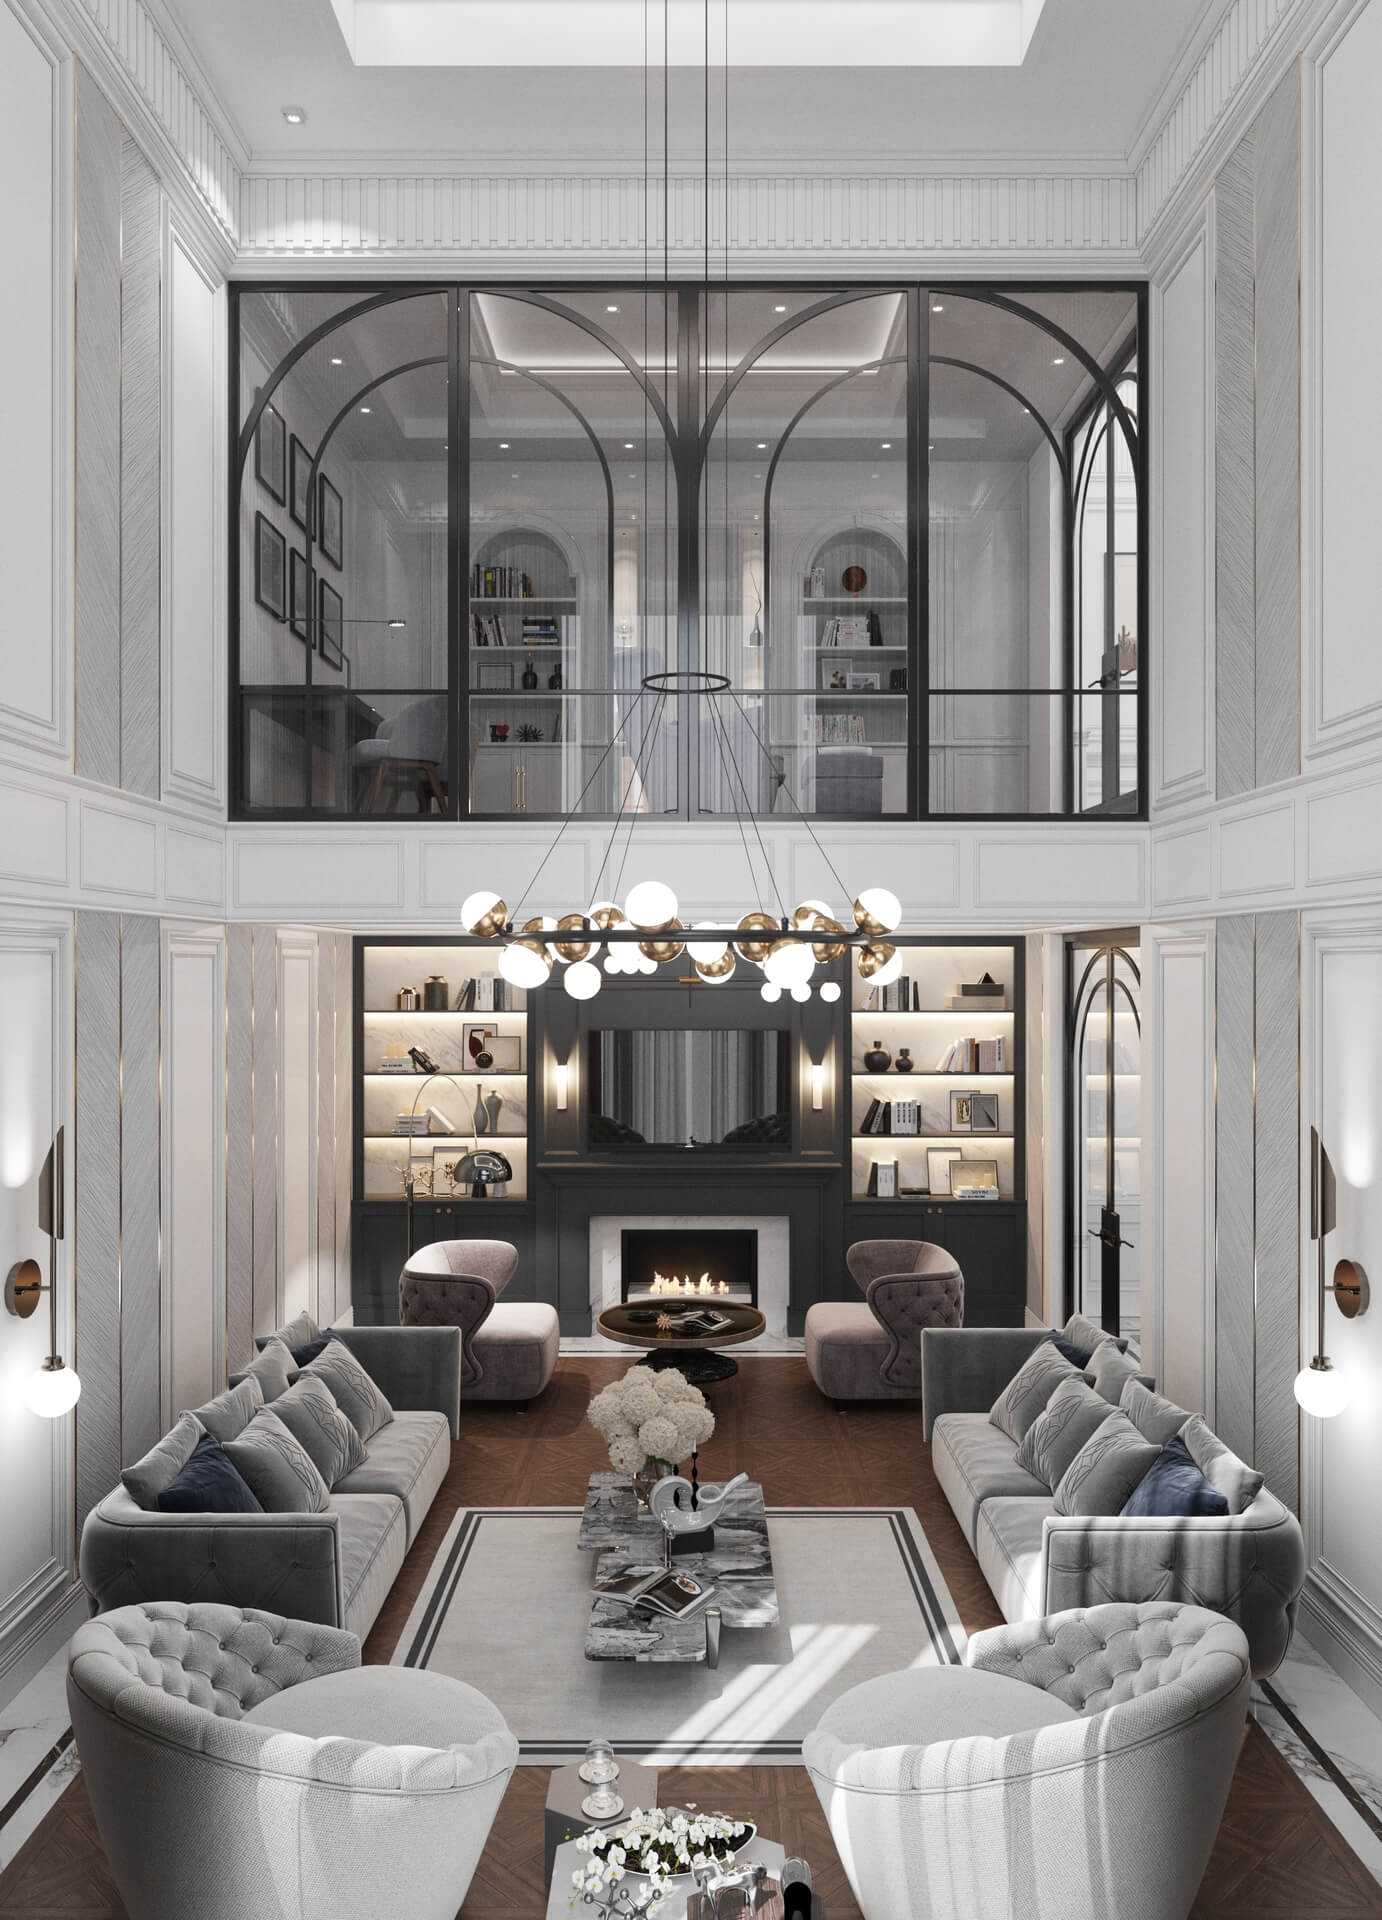  villa dekorasyonu 5160 Dubleks Apartman Dairesi Tasarımı Konutlar